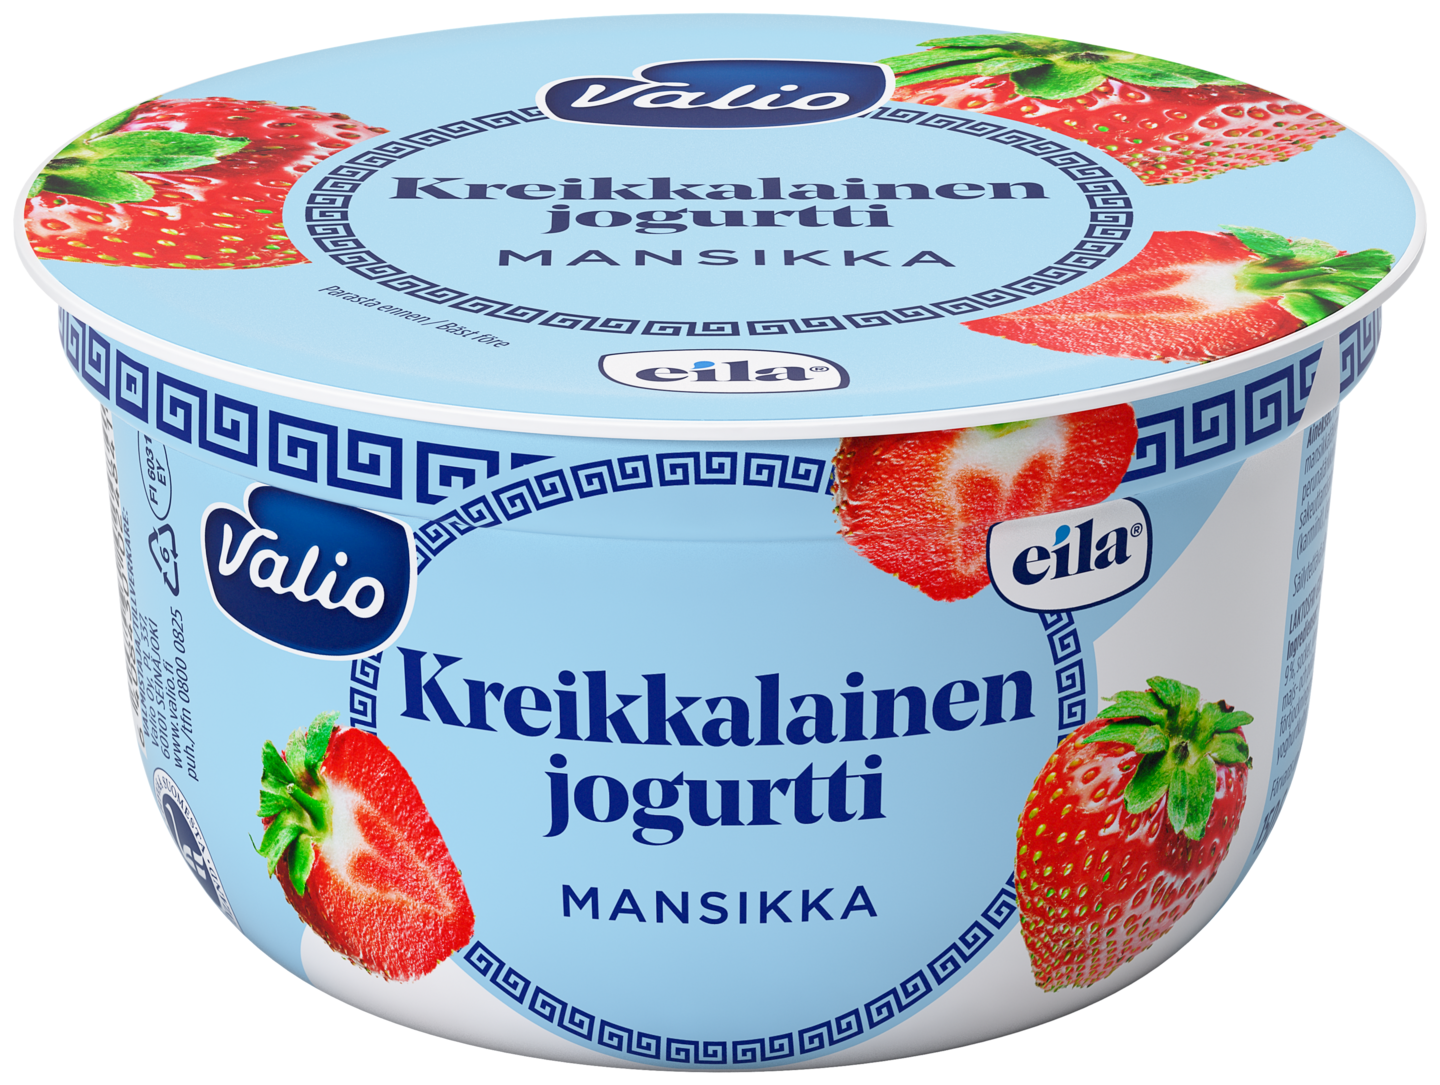 Valio kreikkalainen jogurtti 150 g mansikka laktoositon